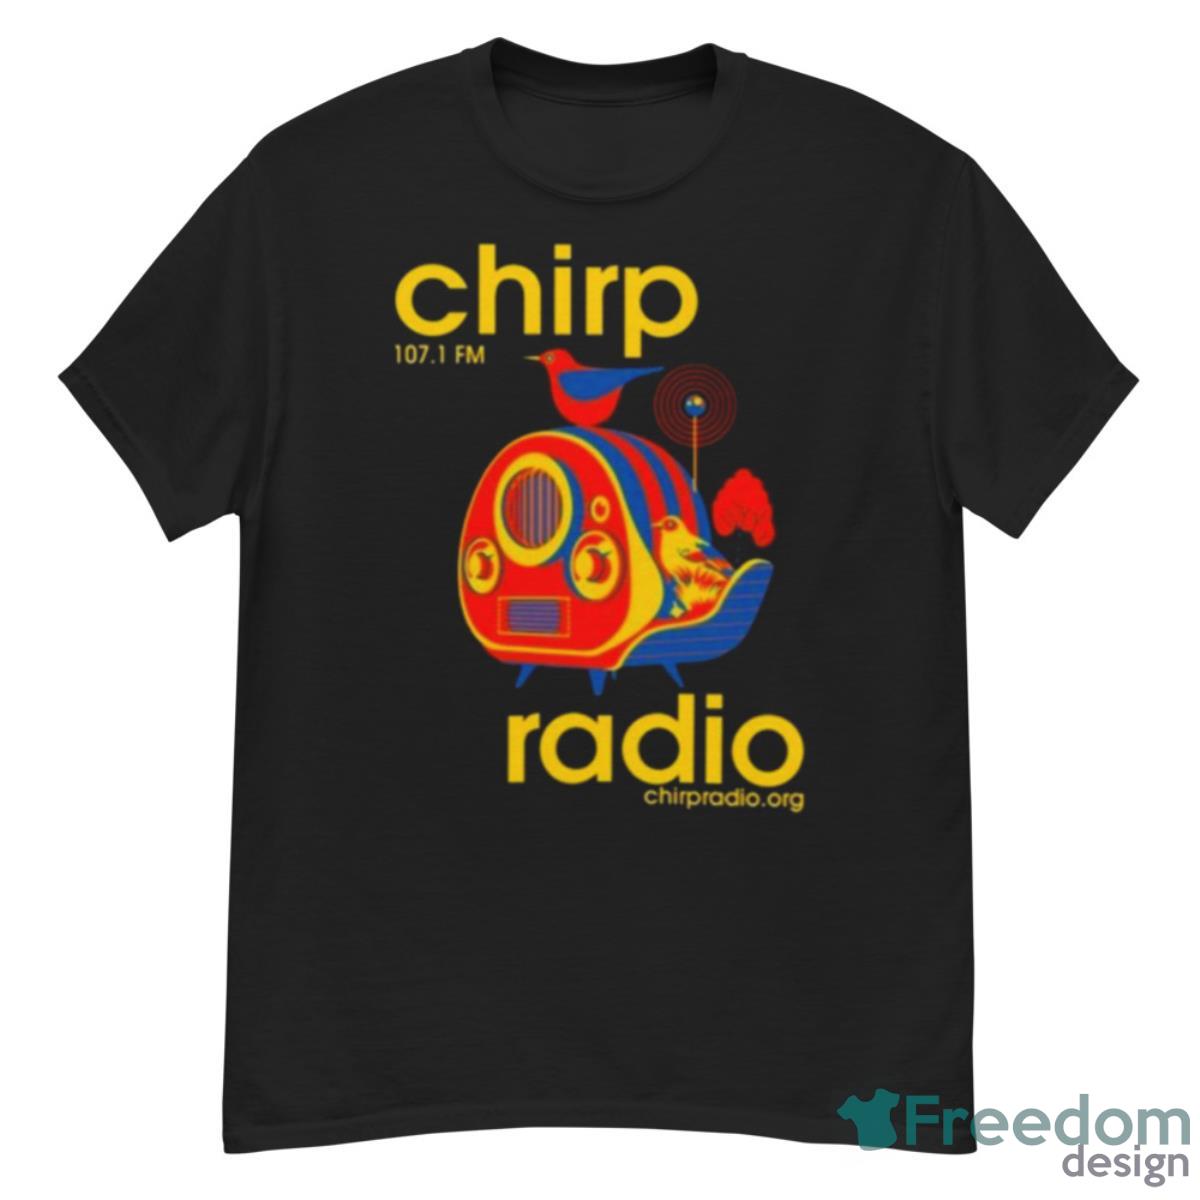 Chirp Radio 107.1 Fm Shirt - G500 Men’s Classic T-Shirt